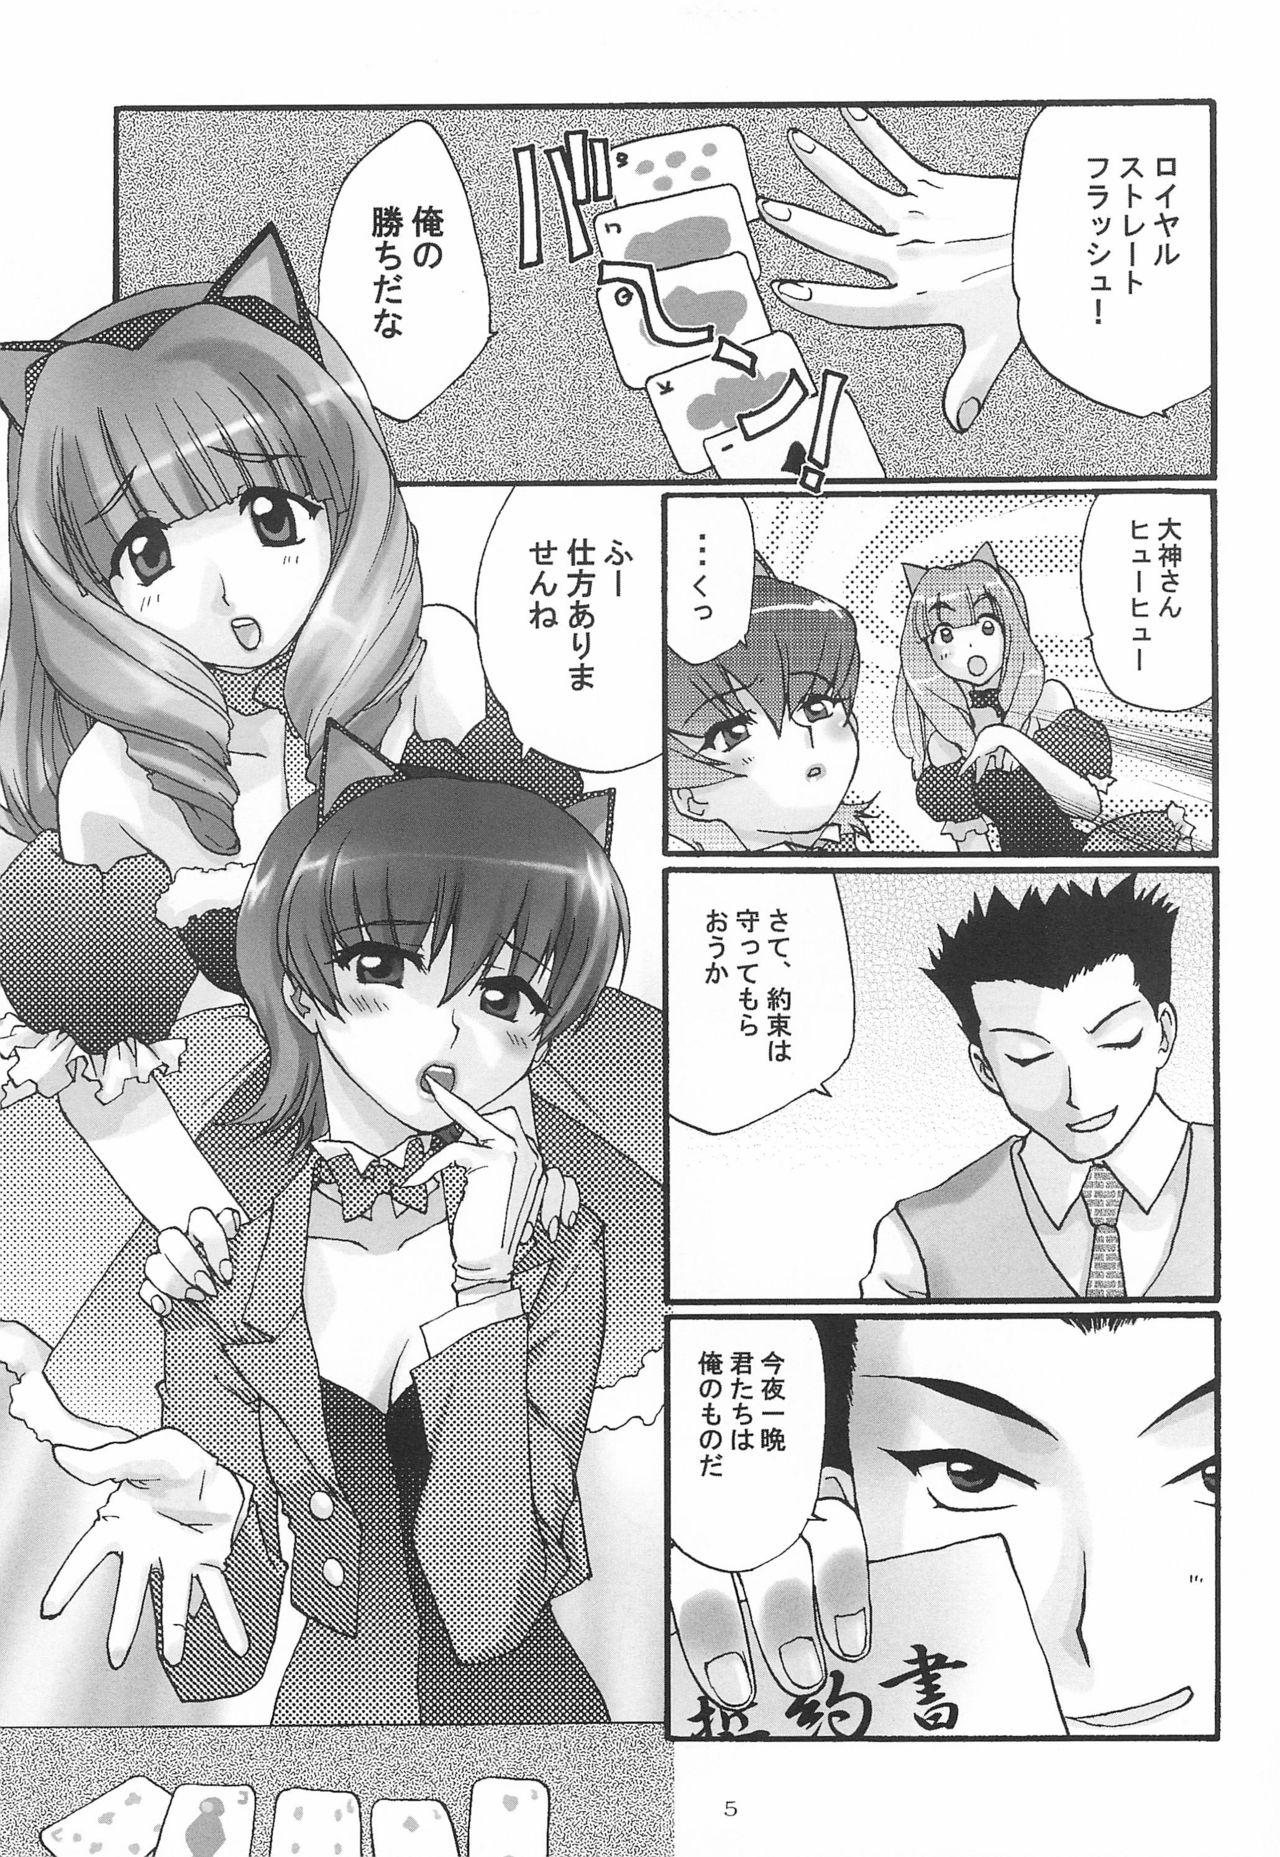 Spank Alleluia - Sakura taisen | sakura wars Softcore - Page 7